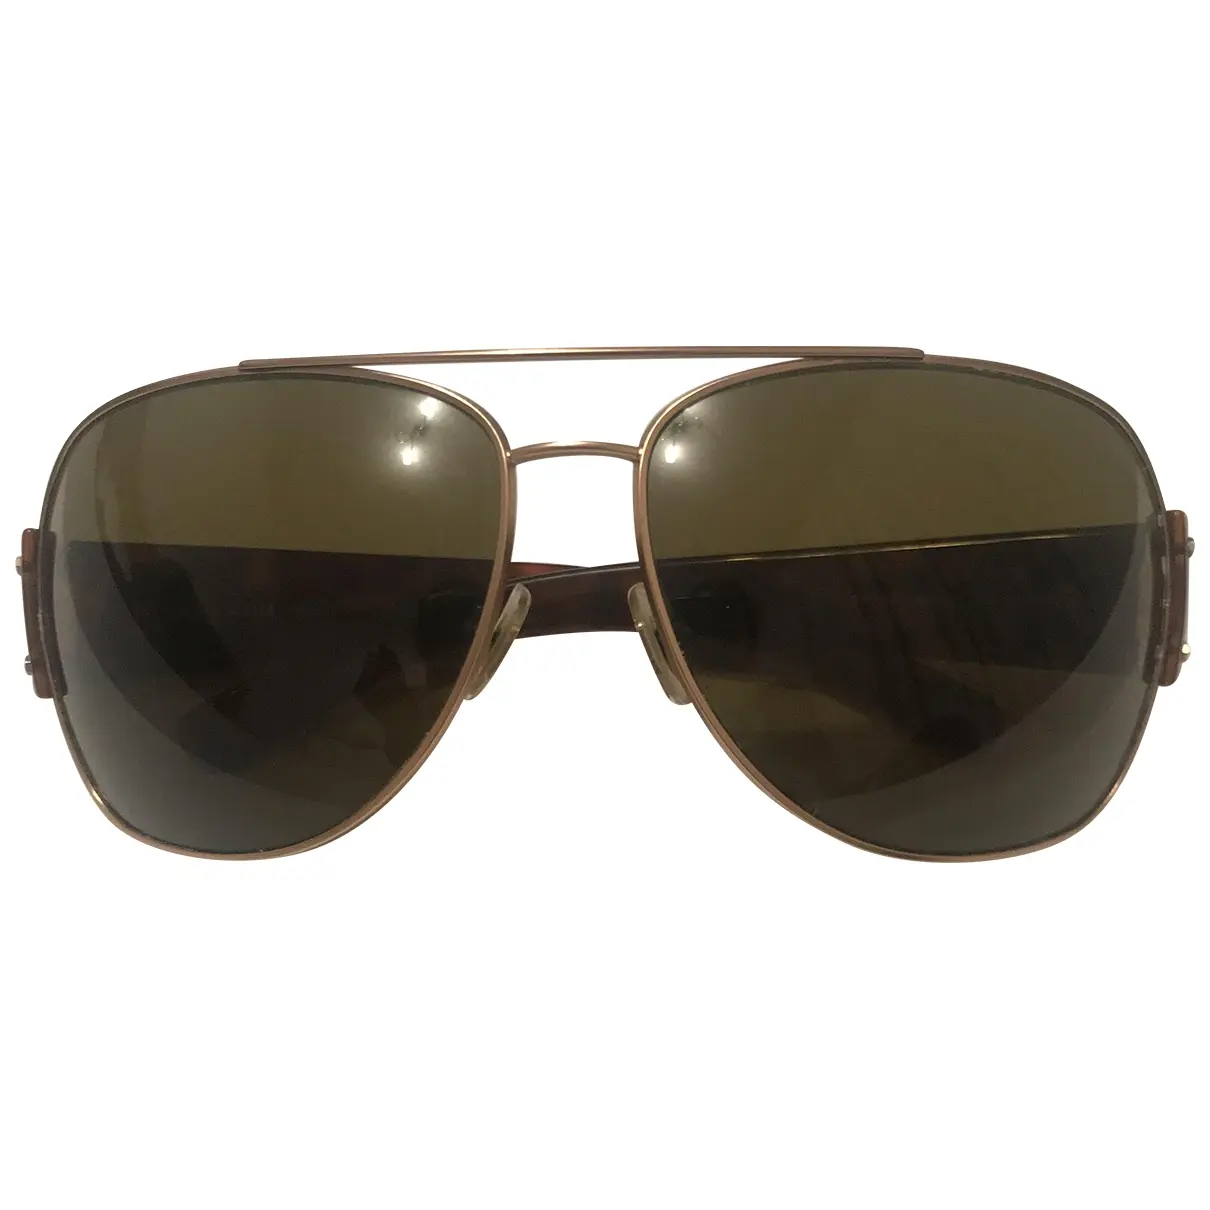 Aviator sunglasses Miu Miu - Vintage